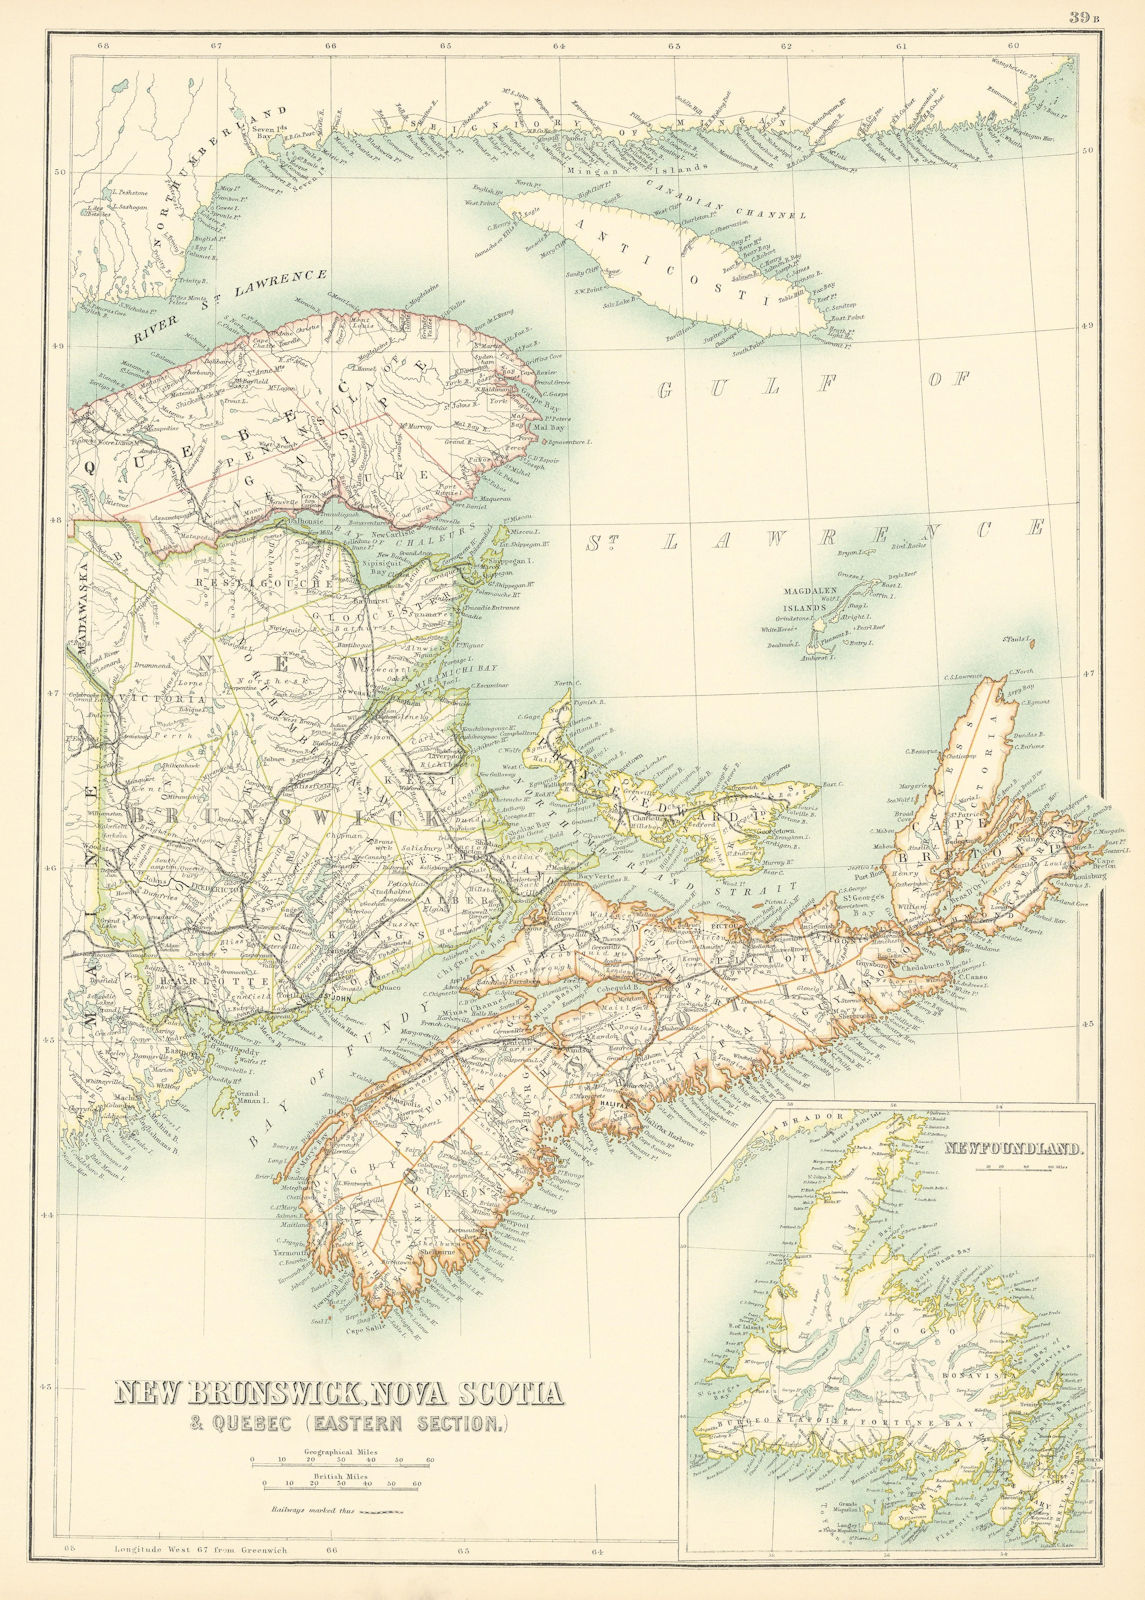 New Brunswick, Nova Scotia & Quebec. Prince Edward Island. BARTHOLOMEW 1898 map